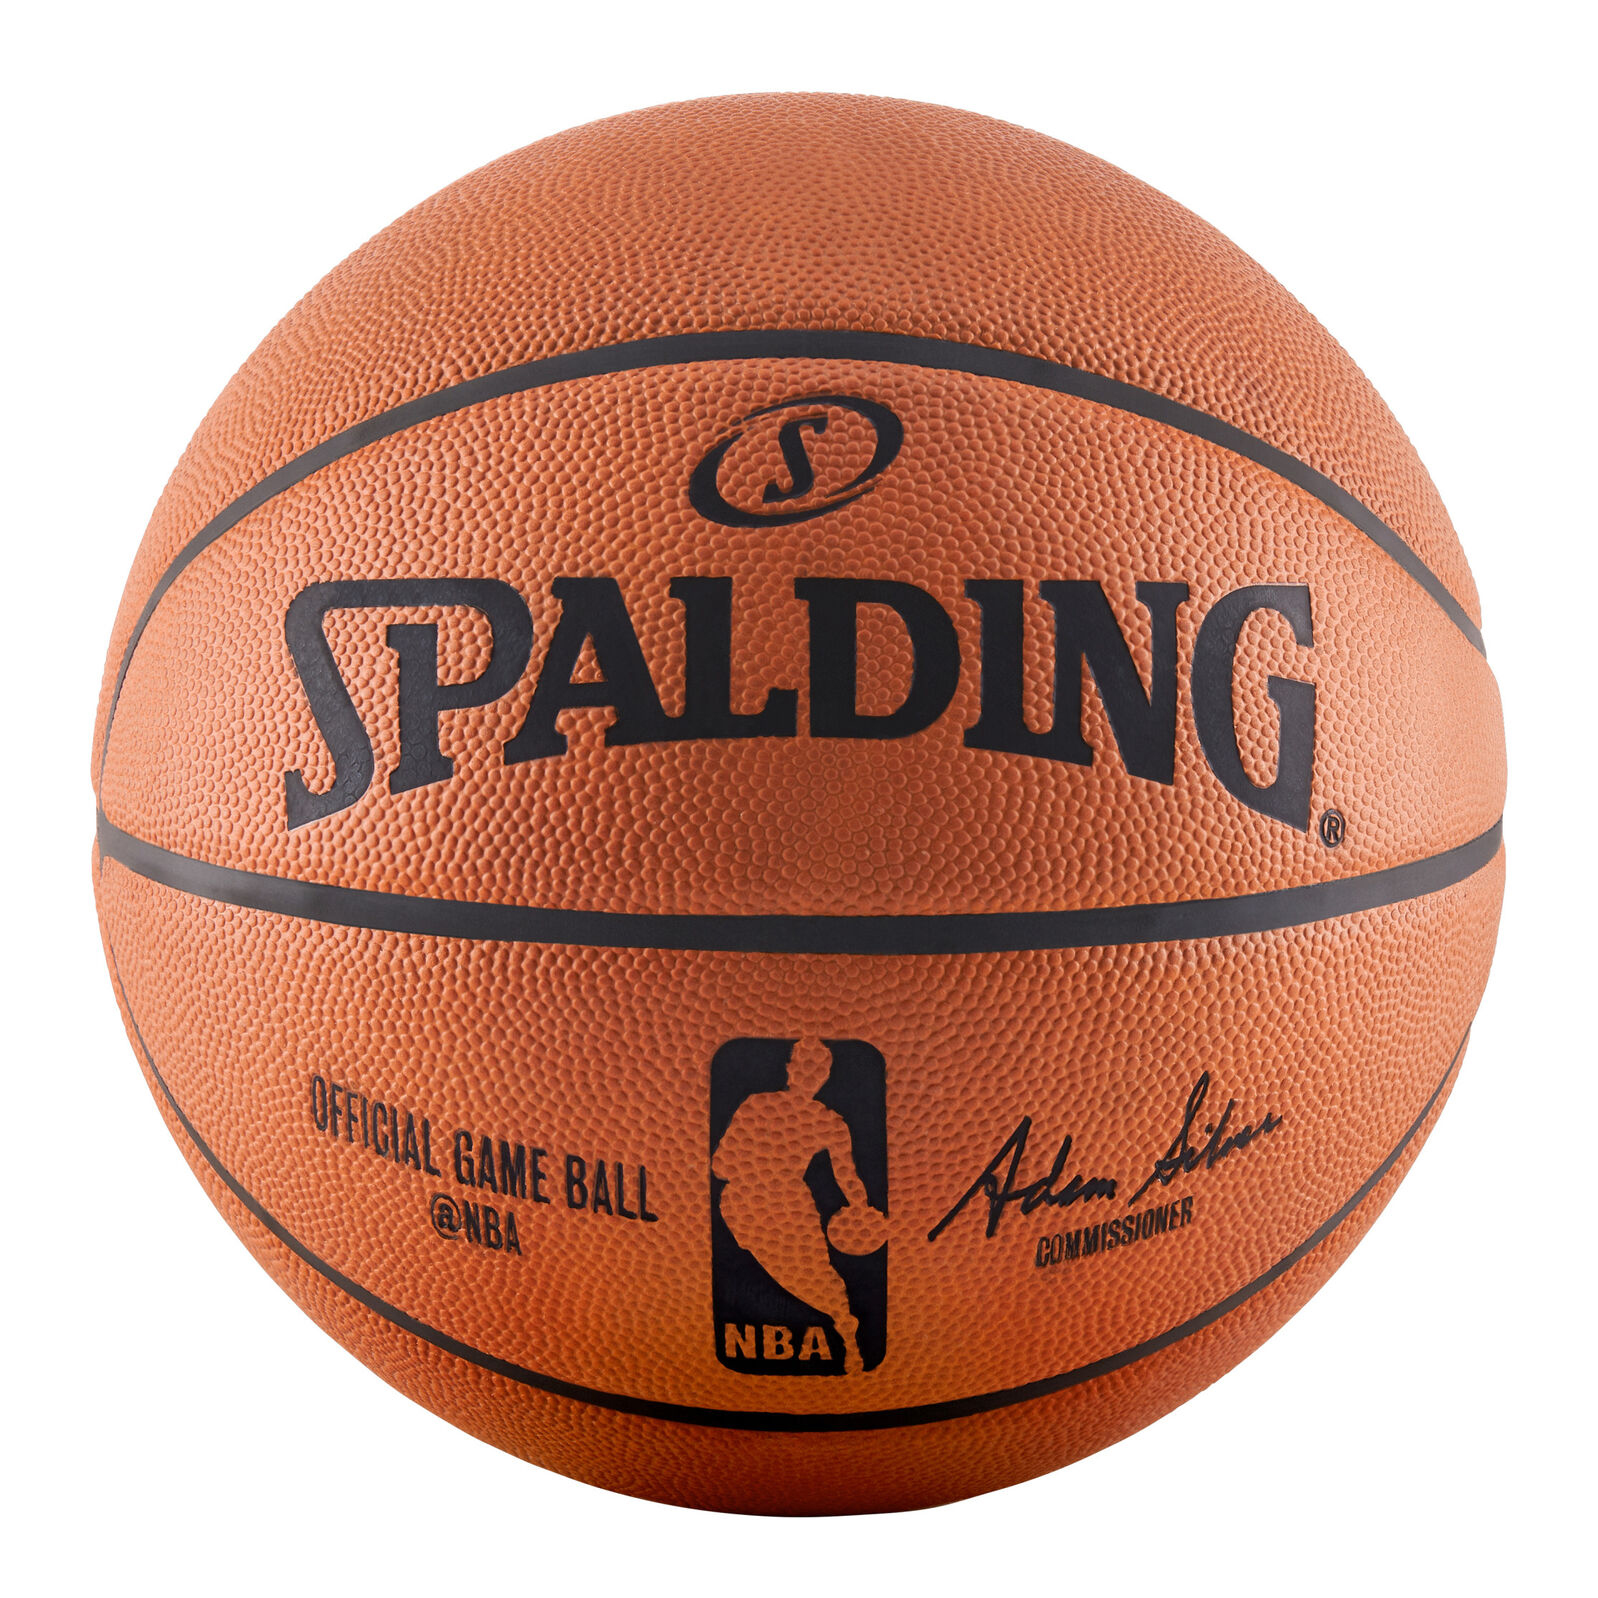 楽天市場 Spalding Nba公式 バスケットボール 7号球 オフィシャルゲームボール 天然皮革 スポルディング 楽天スポーツゾーン